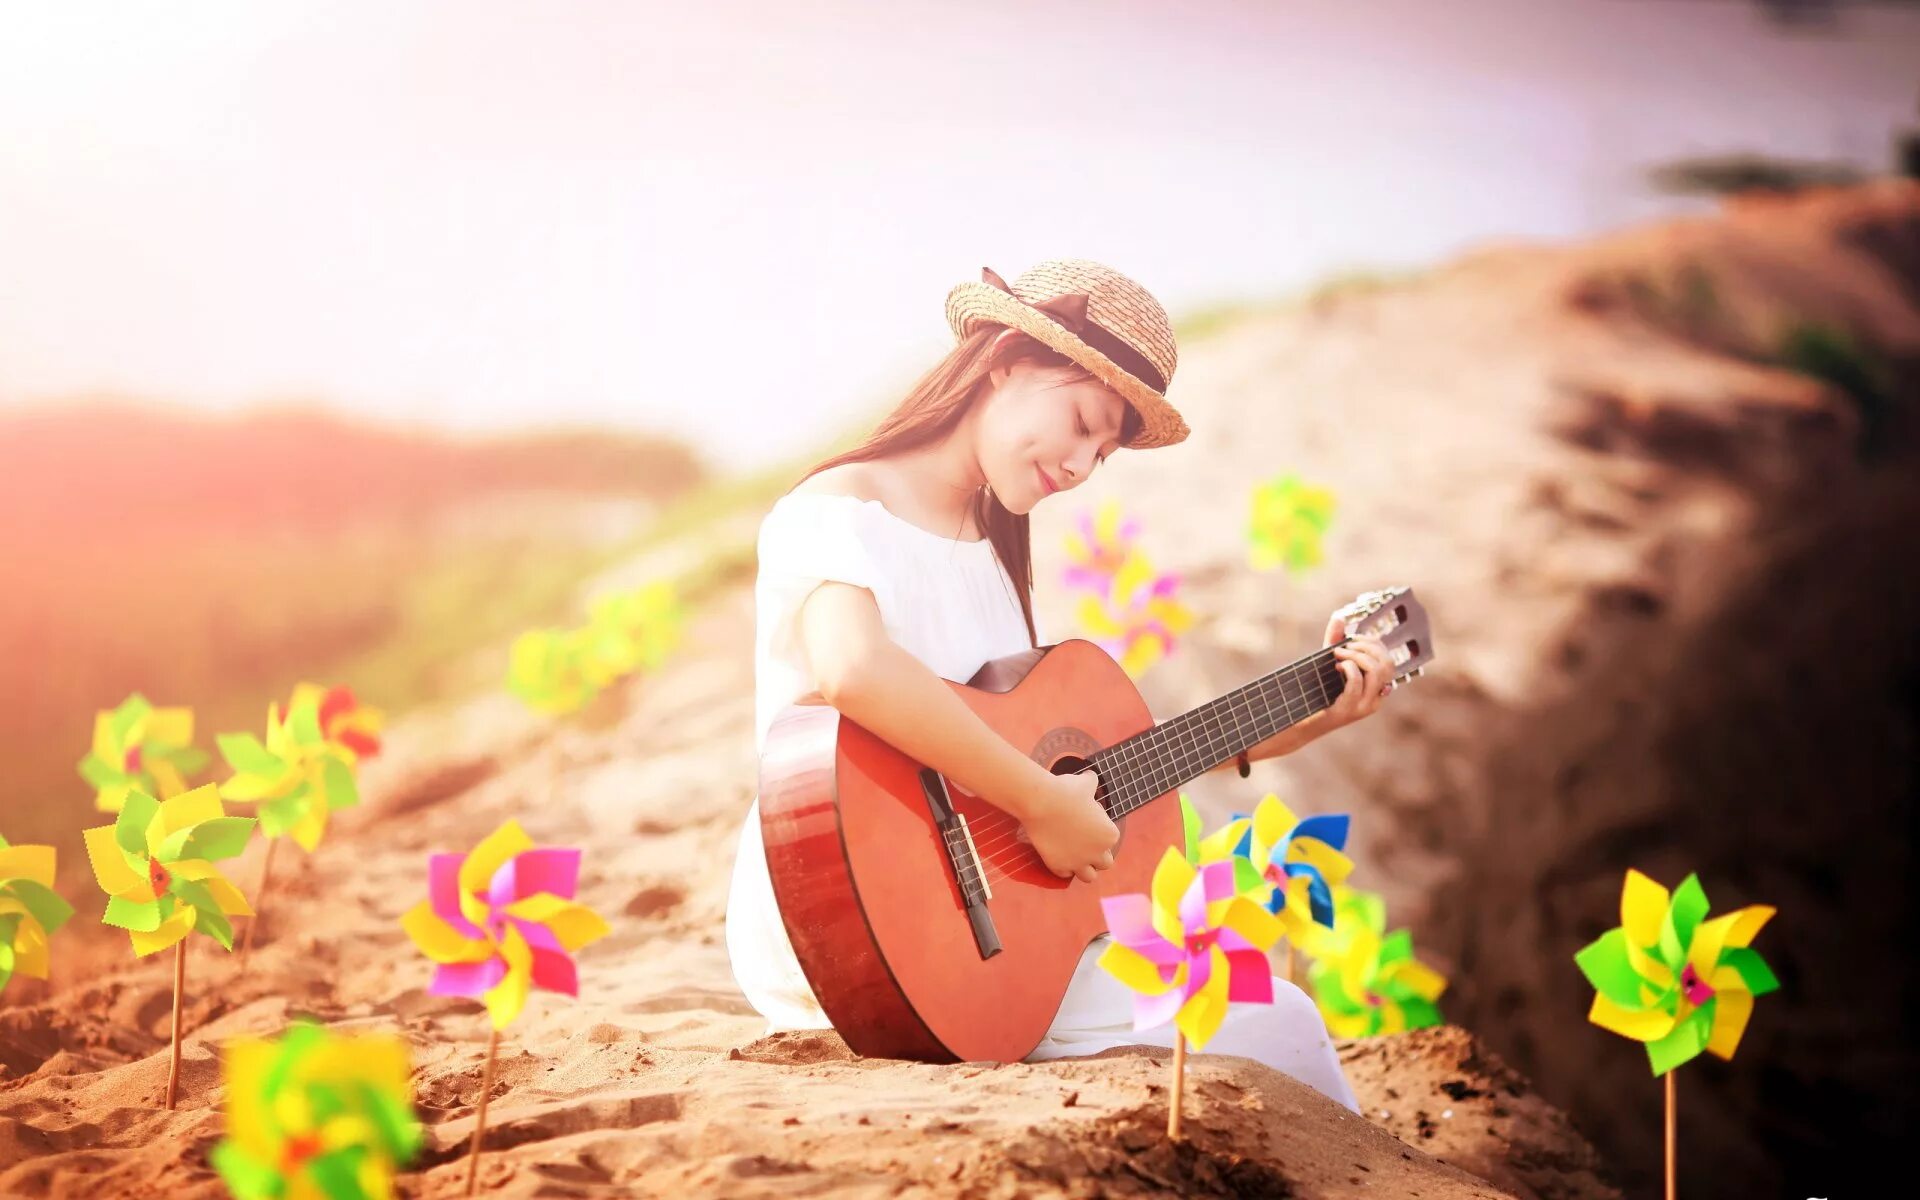 Послушать песню природе. Фотосессия с гитарой на природе. Девушка с гитарой. Девушка с гитарой на природе. Музыкальная фотосессия.